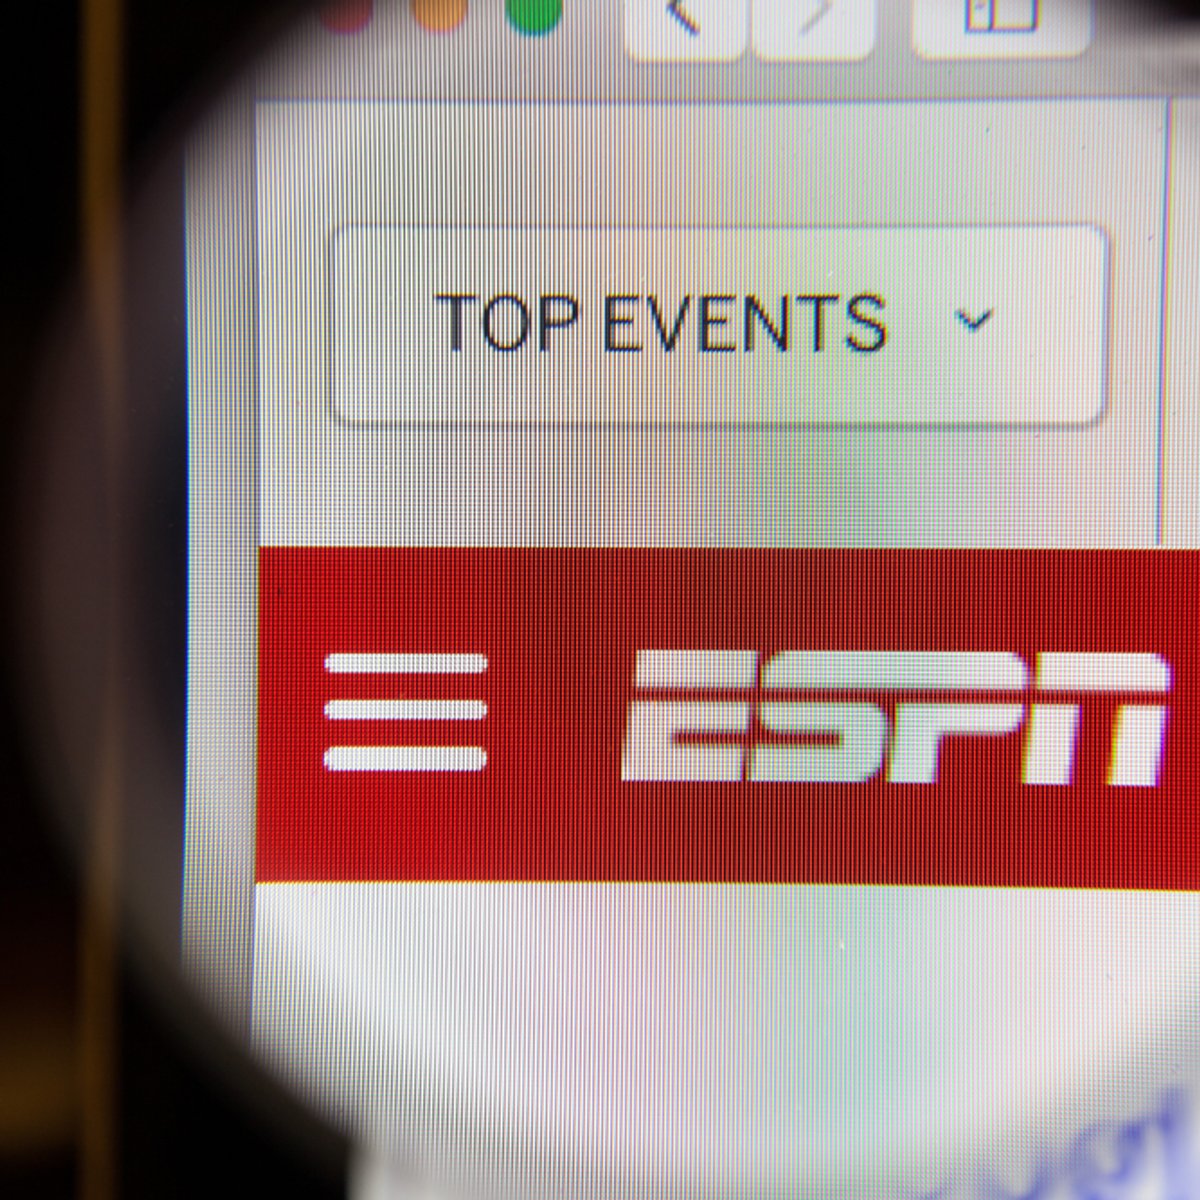 ESPN empfangen im Live-Stream und TV in Deutschland